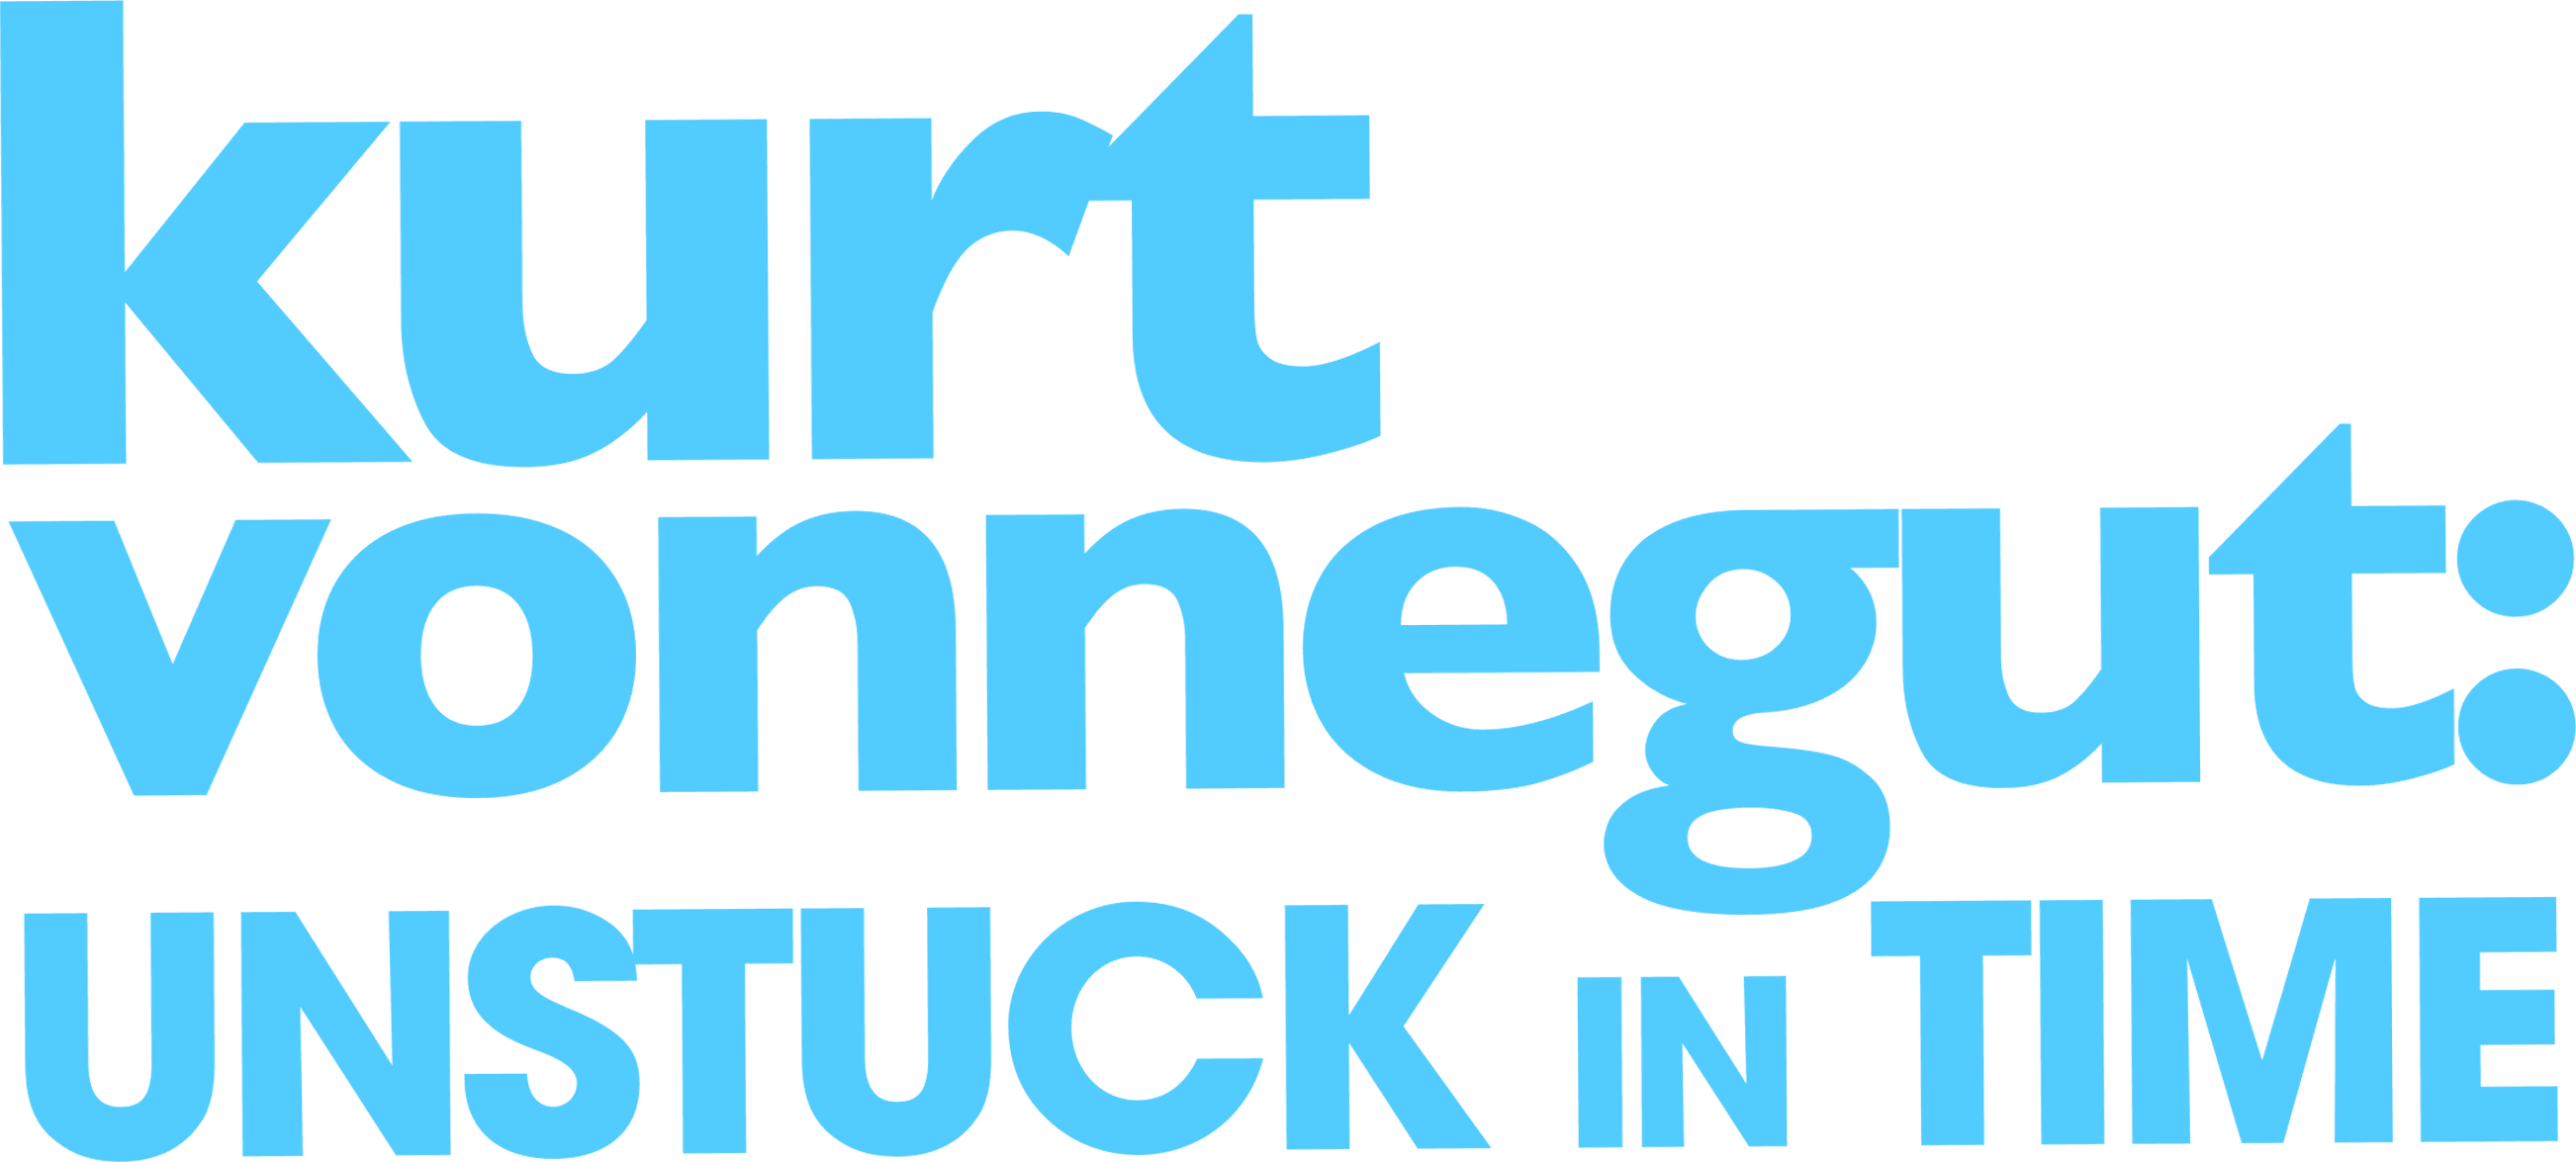 Kurt Vonnegut: Unstuck in Time logo